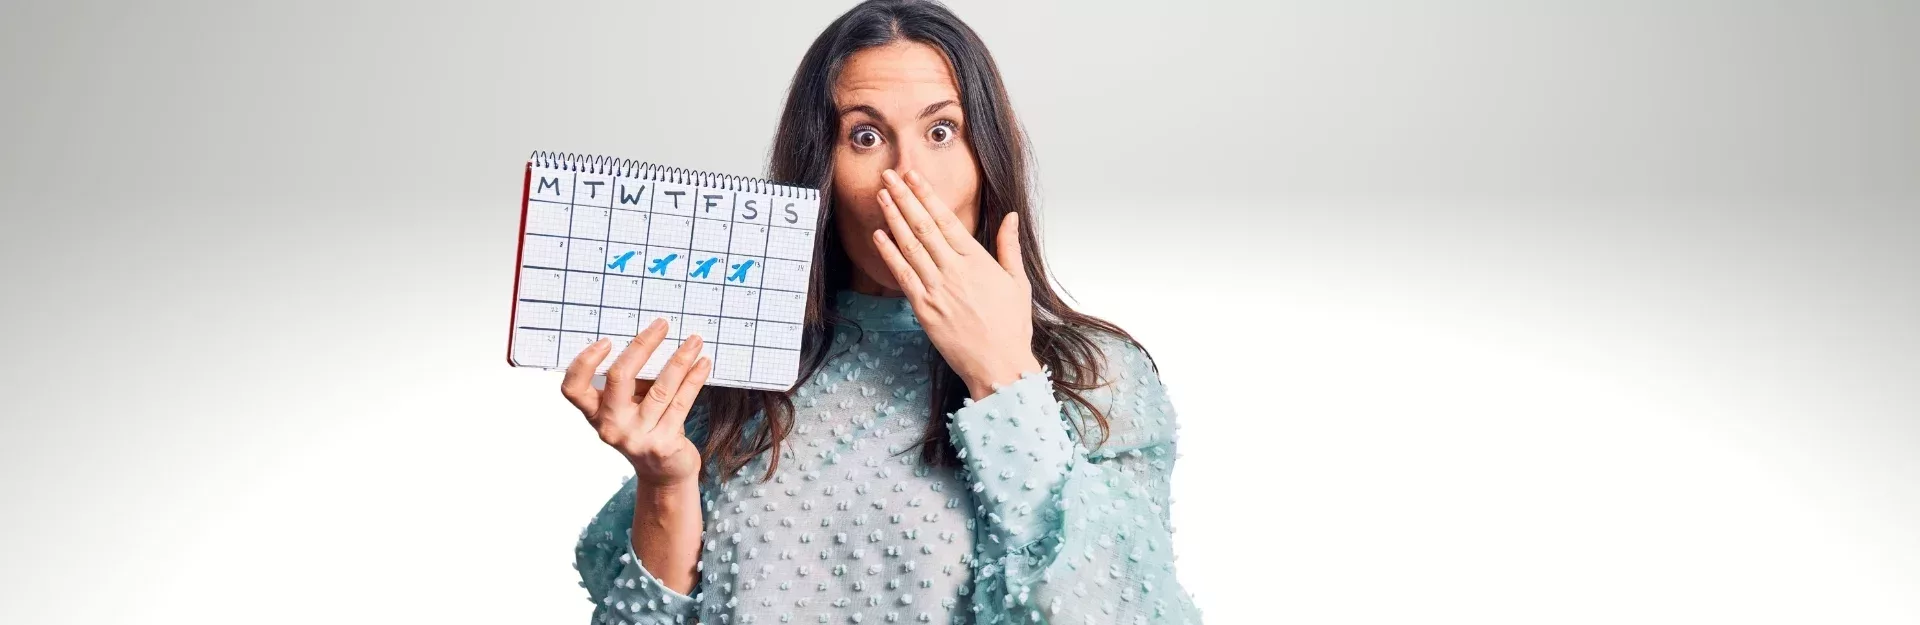 Erschrockene Frau mit Kalender in der Hand